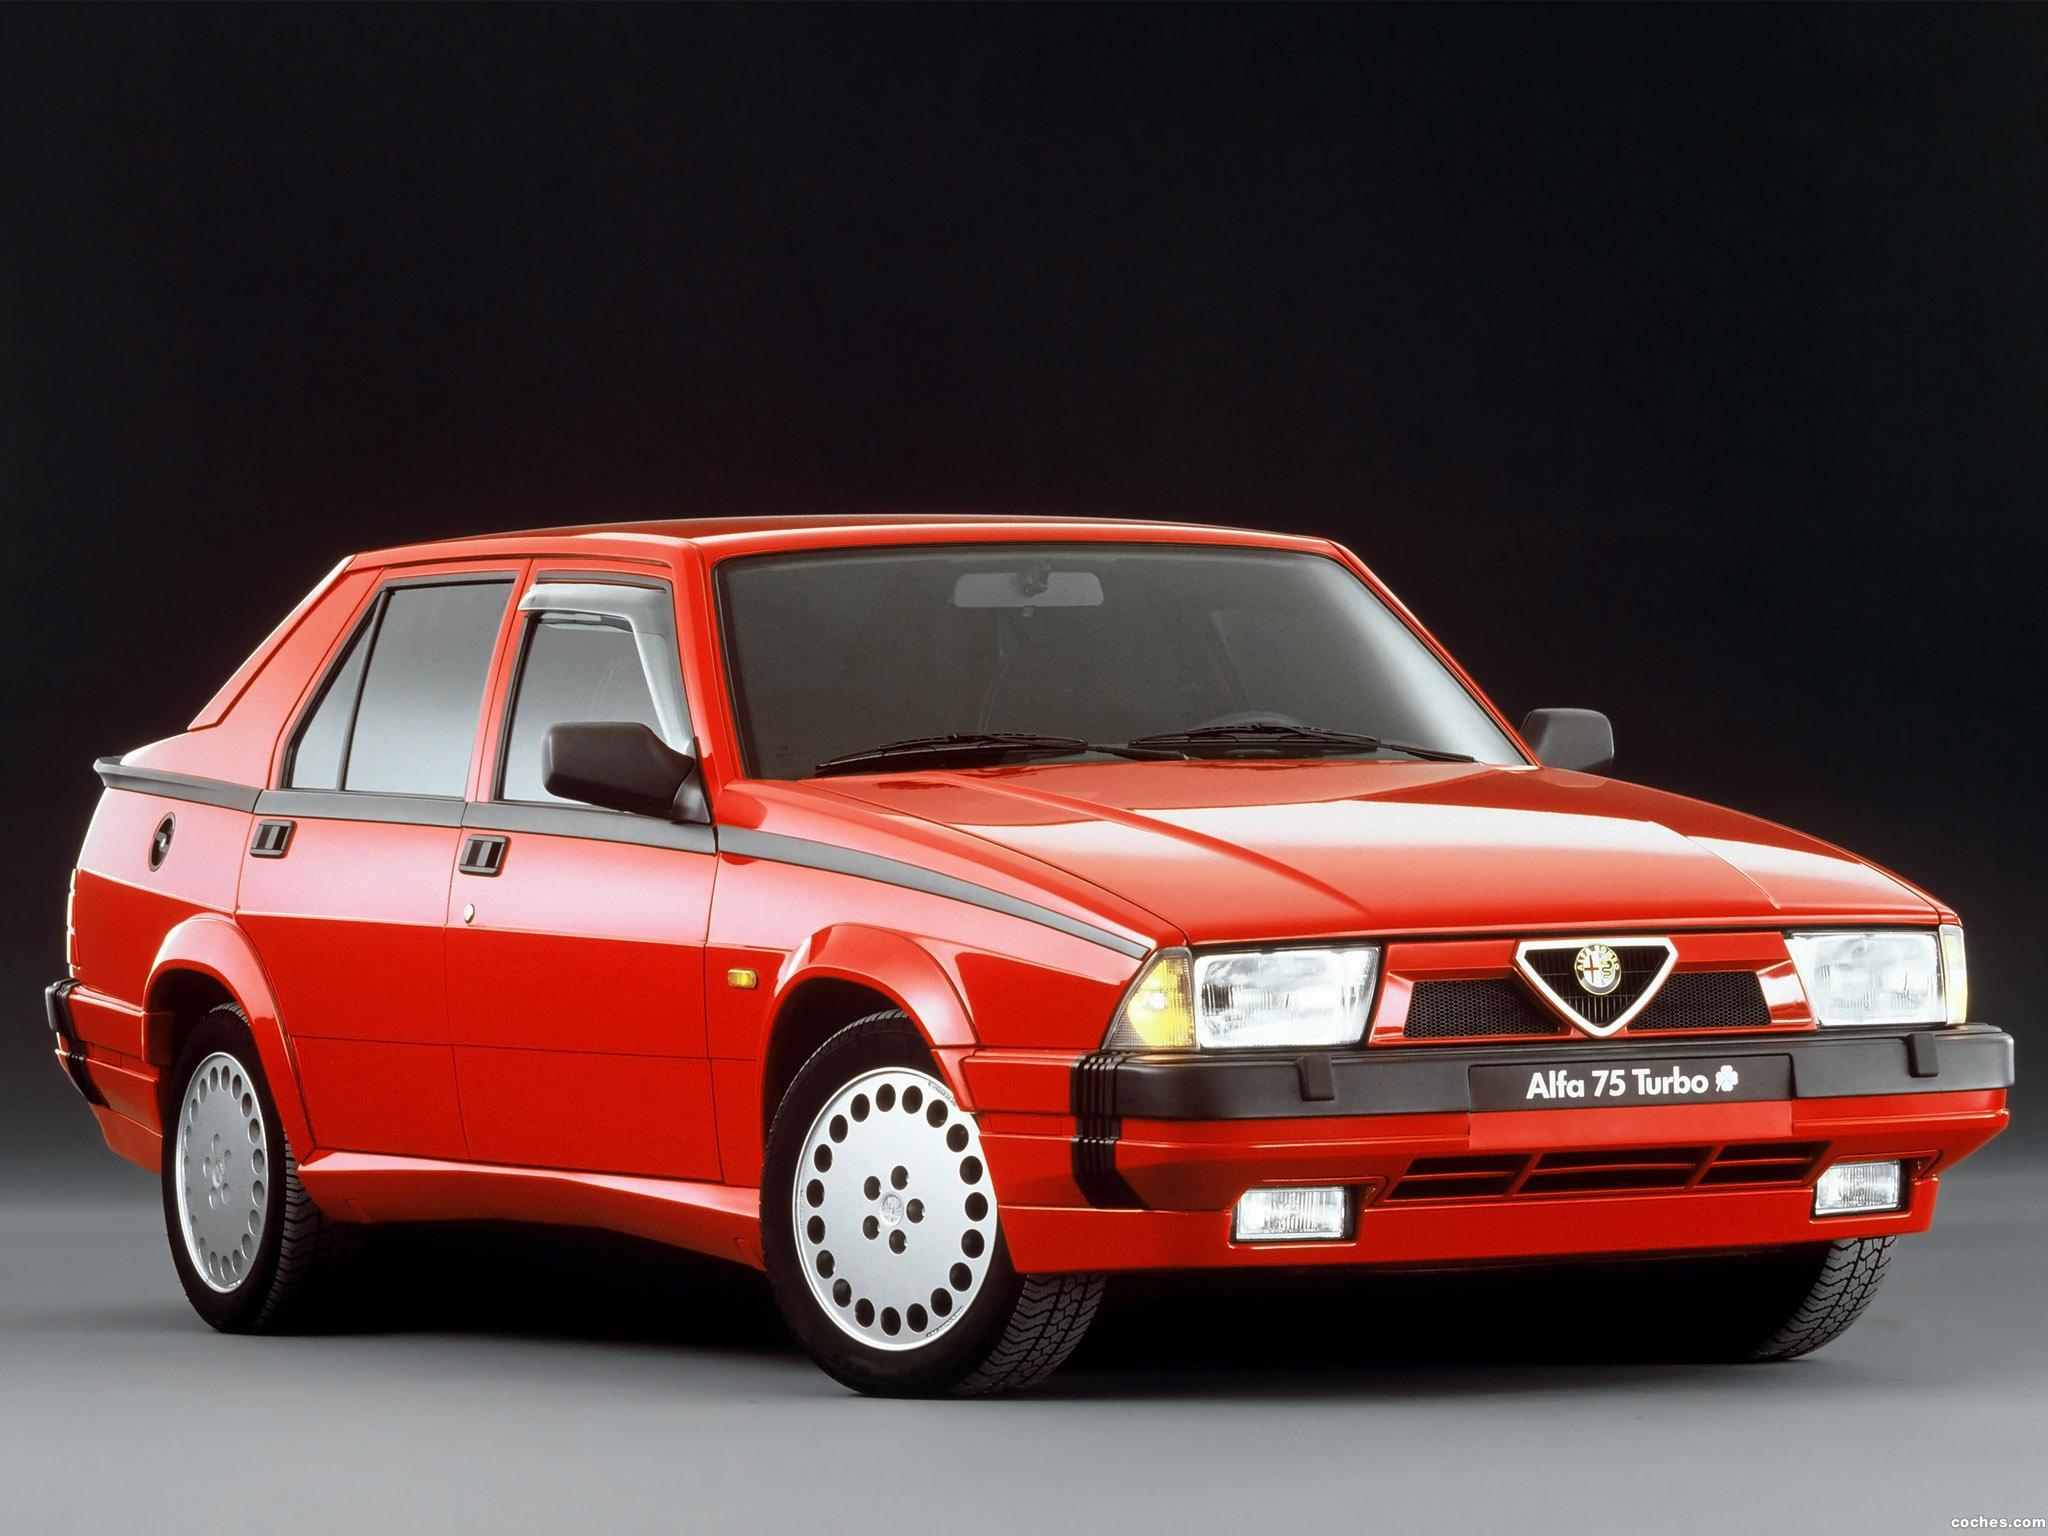 Galera de Alfa Romeo 75 18i